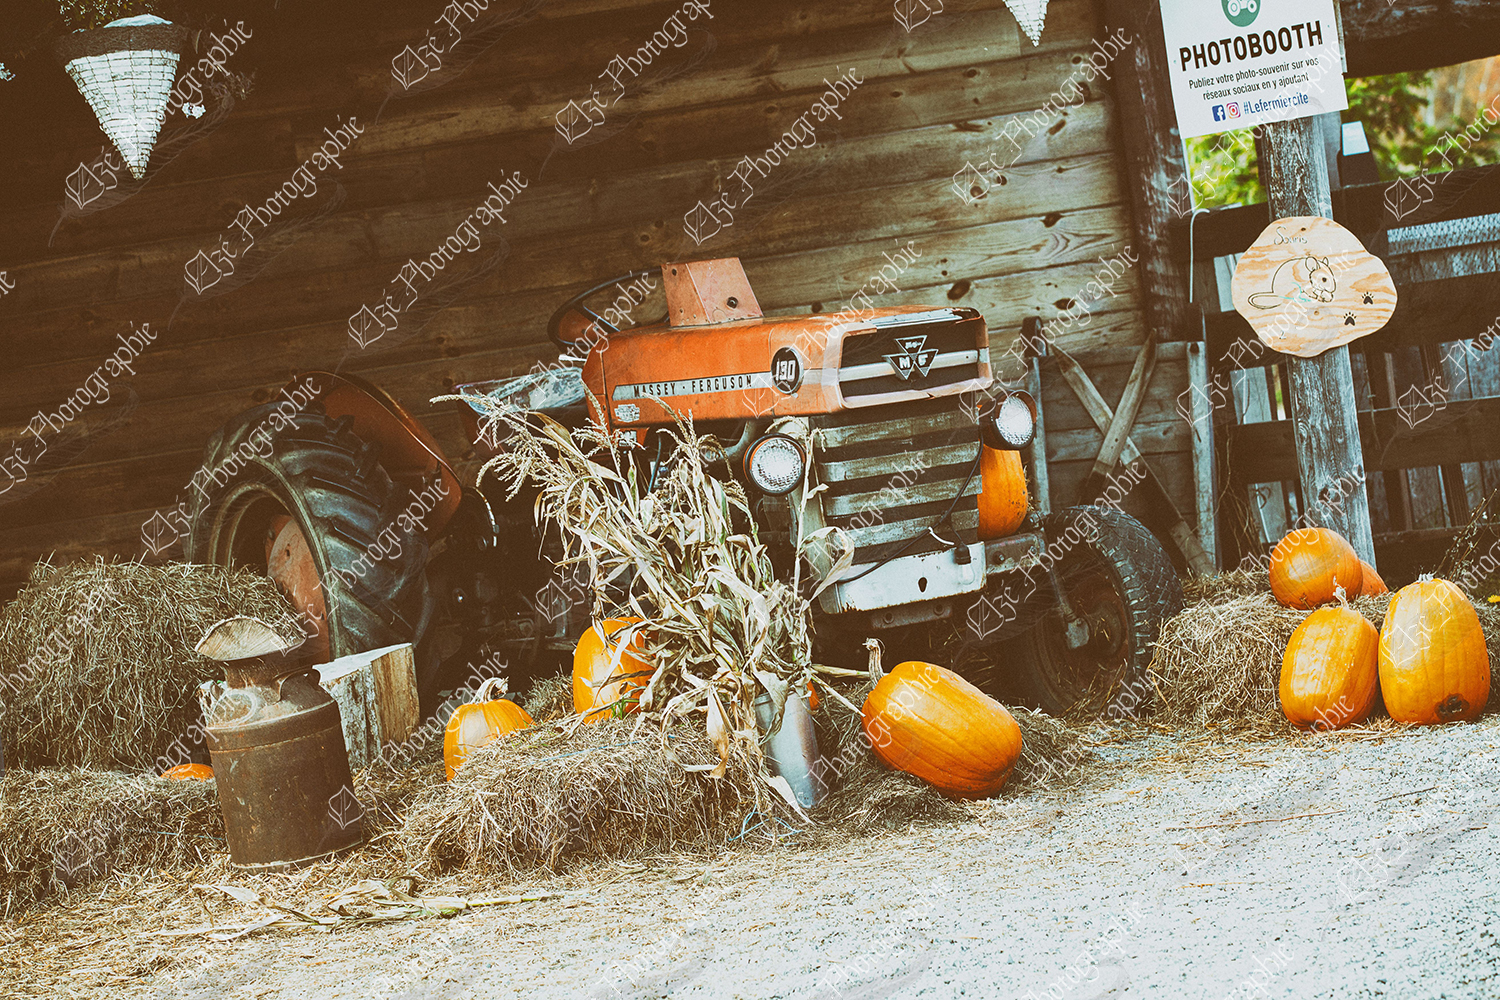 elze_photo_4615_agrotourisme_citrouille_tracteur_agritourism_site